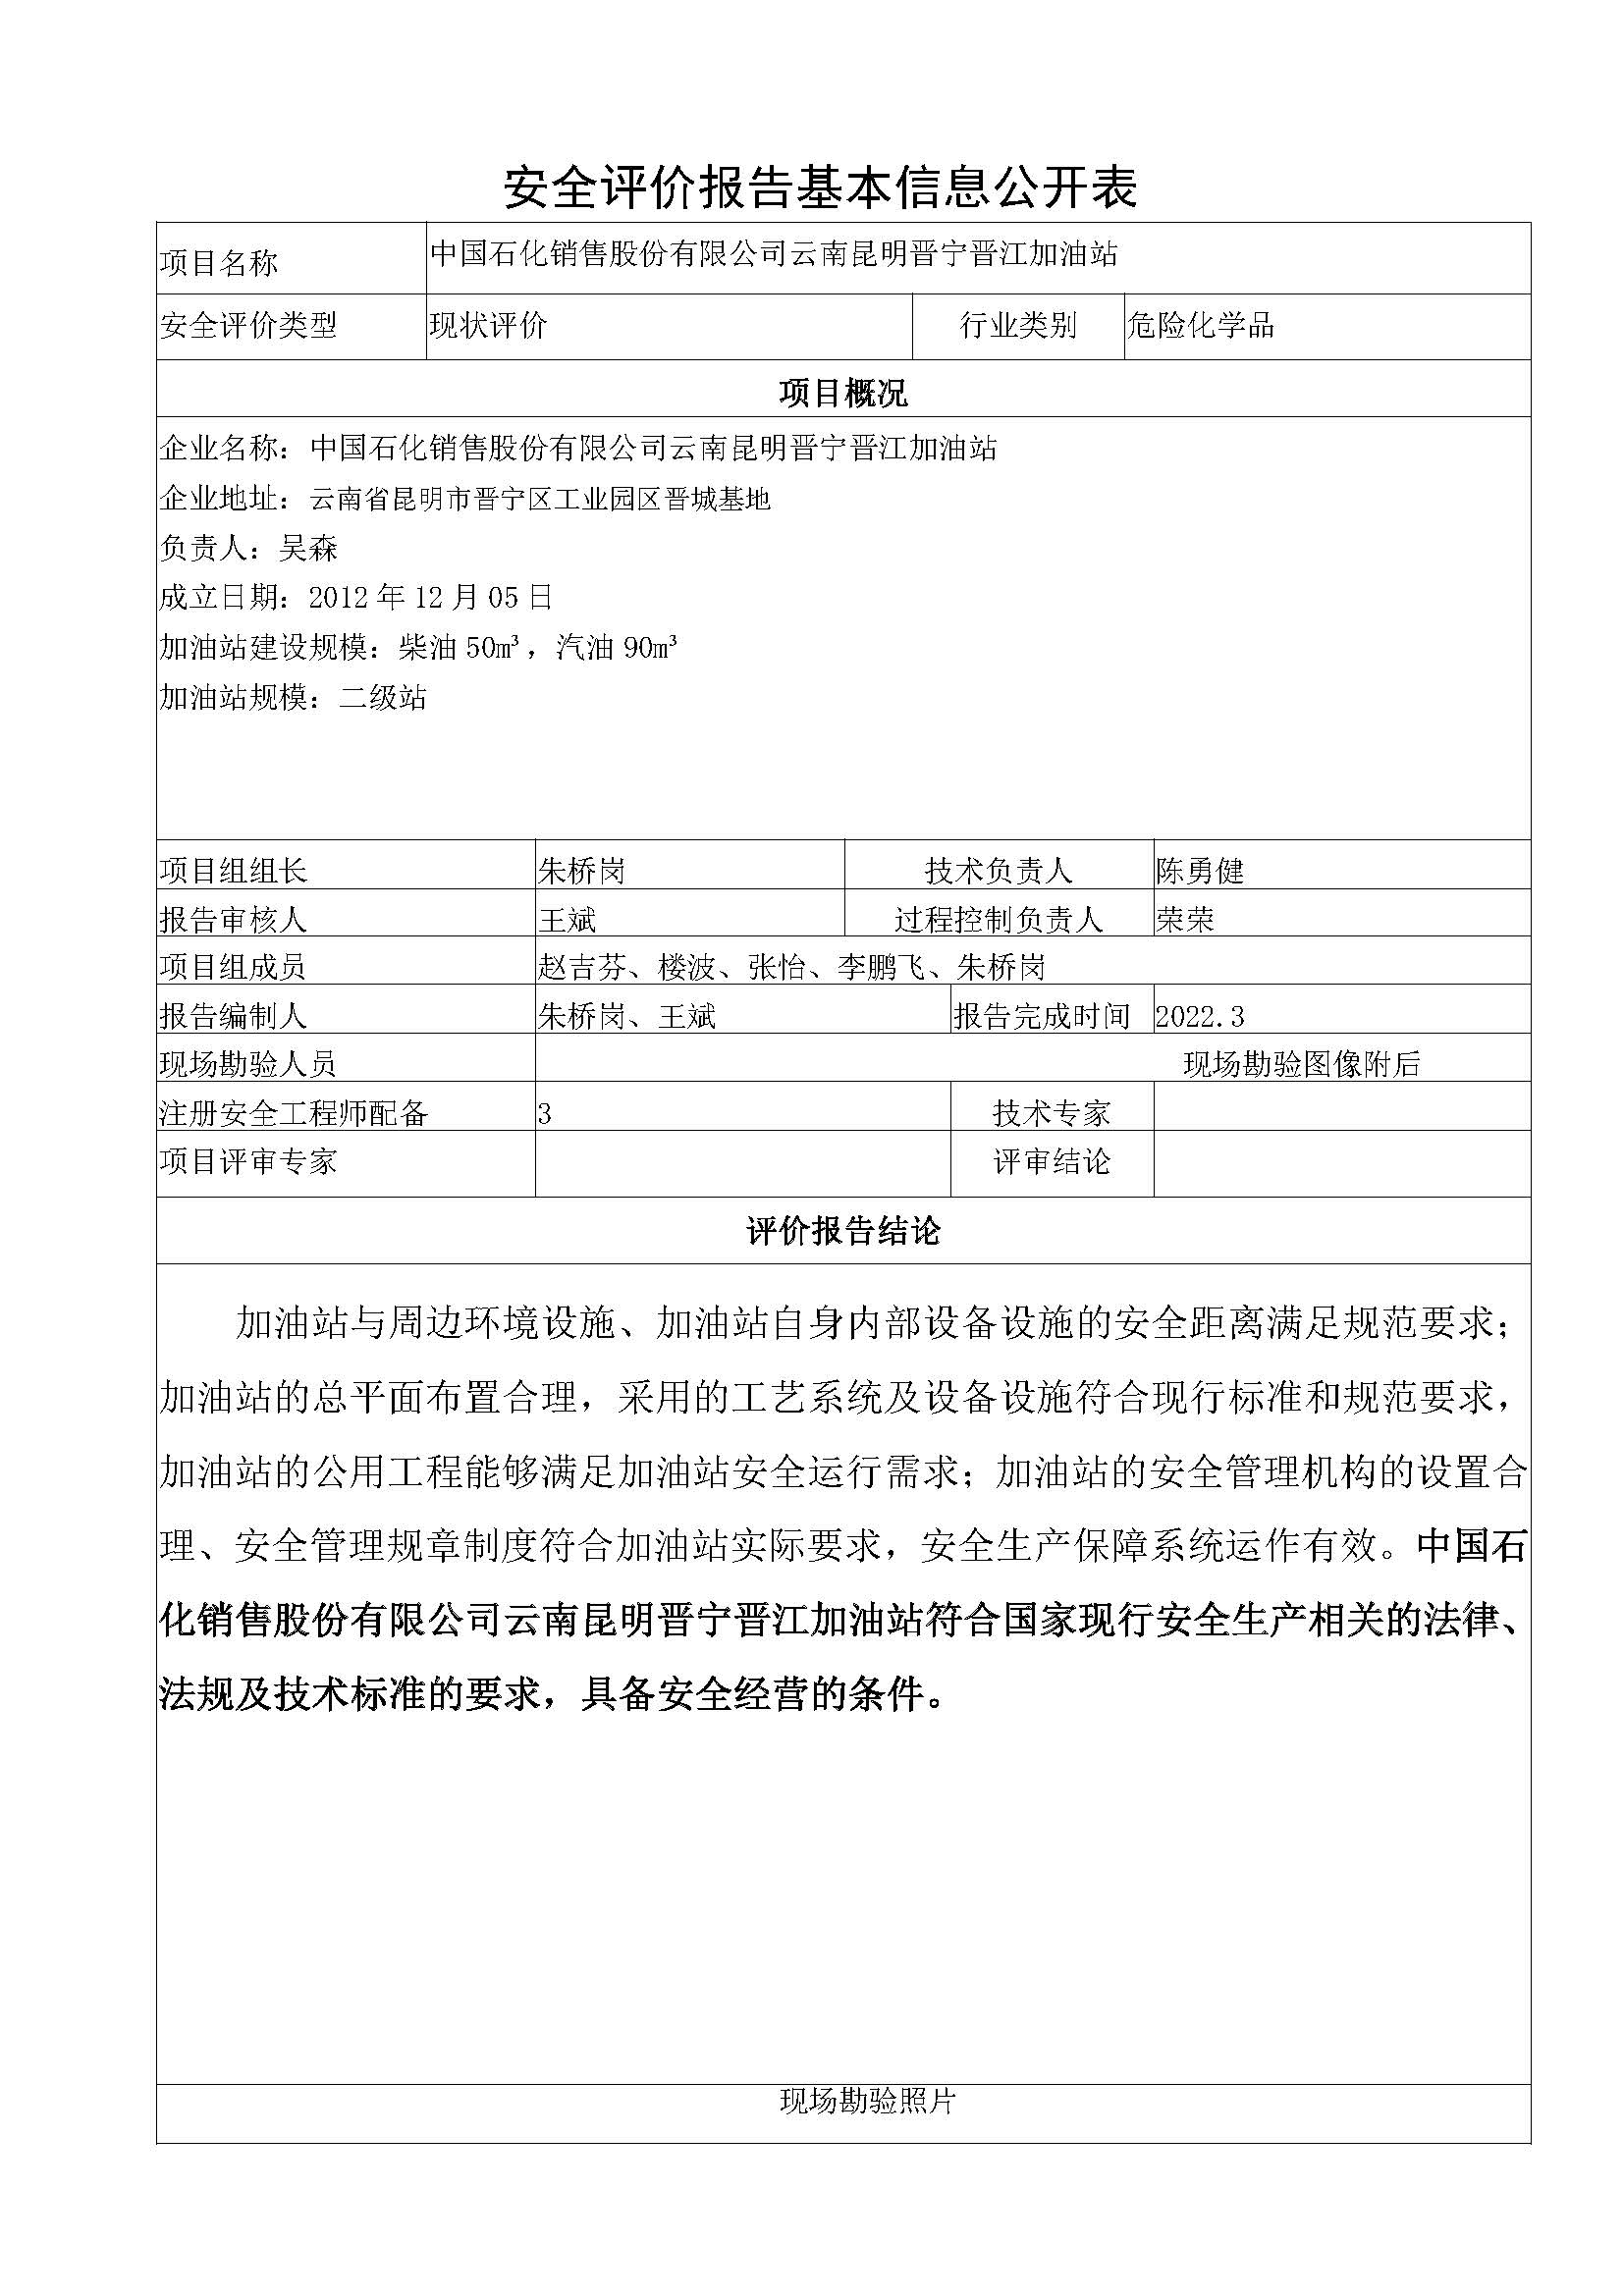 晋江加油站安全评价报告基本信息公开表